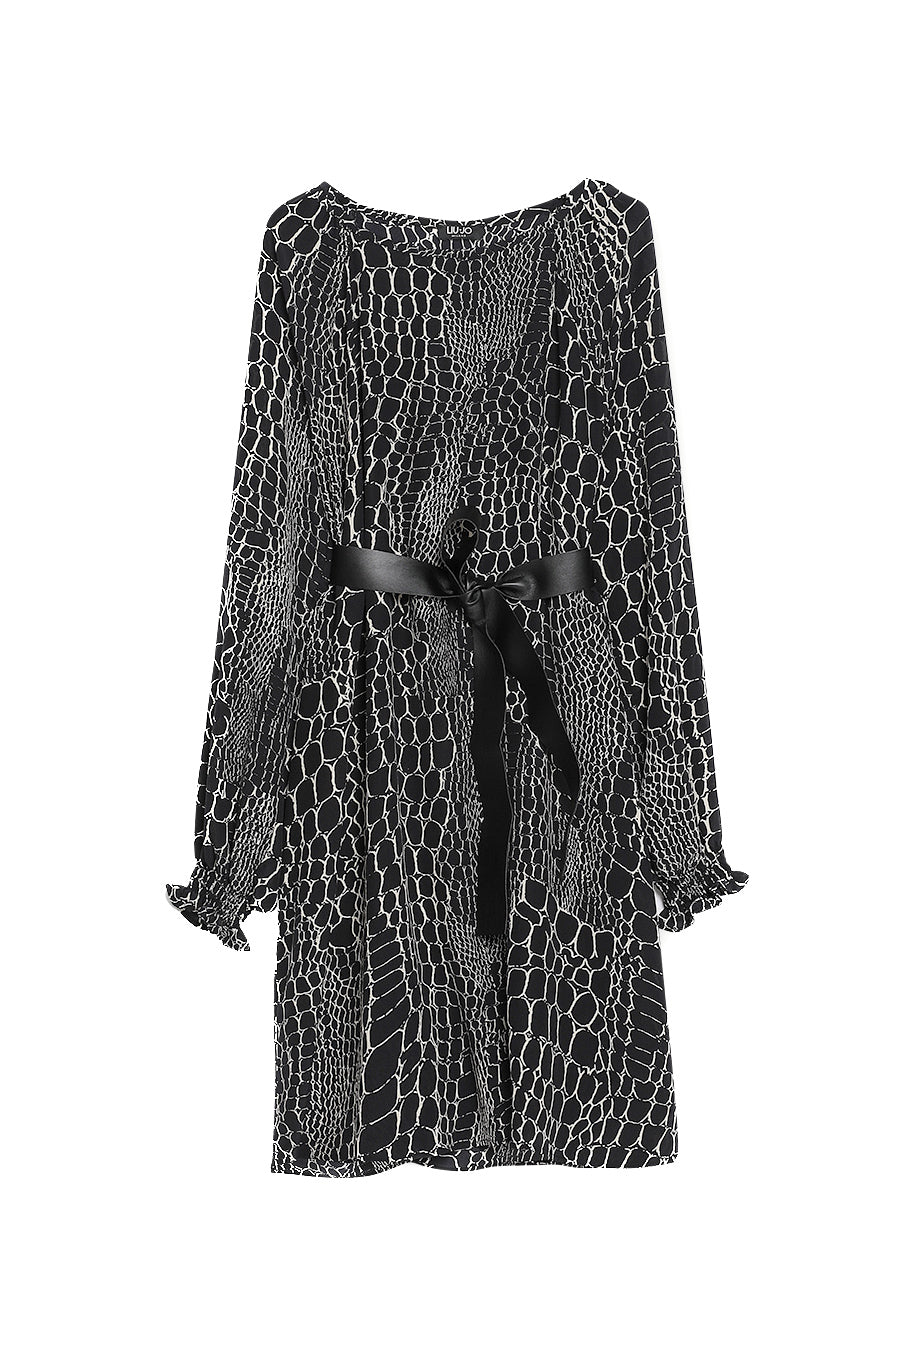 LIU JO Vestito da cerimonia nero in seta con stampa coccodrillo - Mancinelli 1954